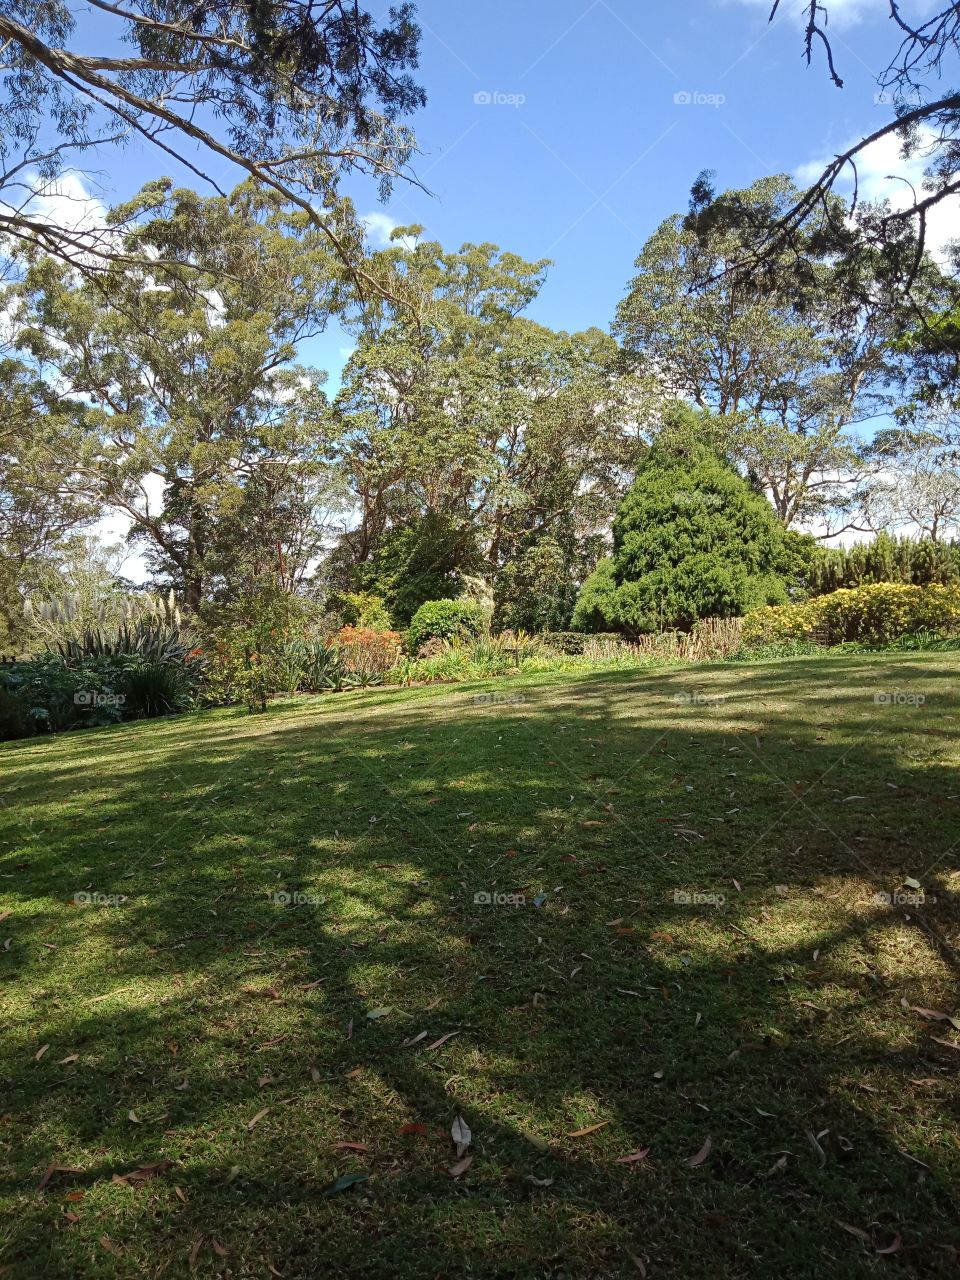 a large landscaped garden or park